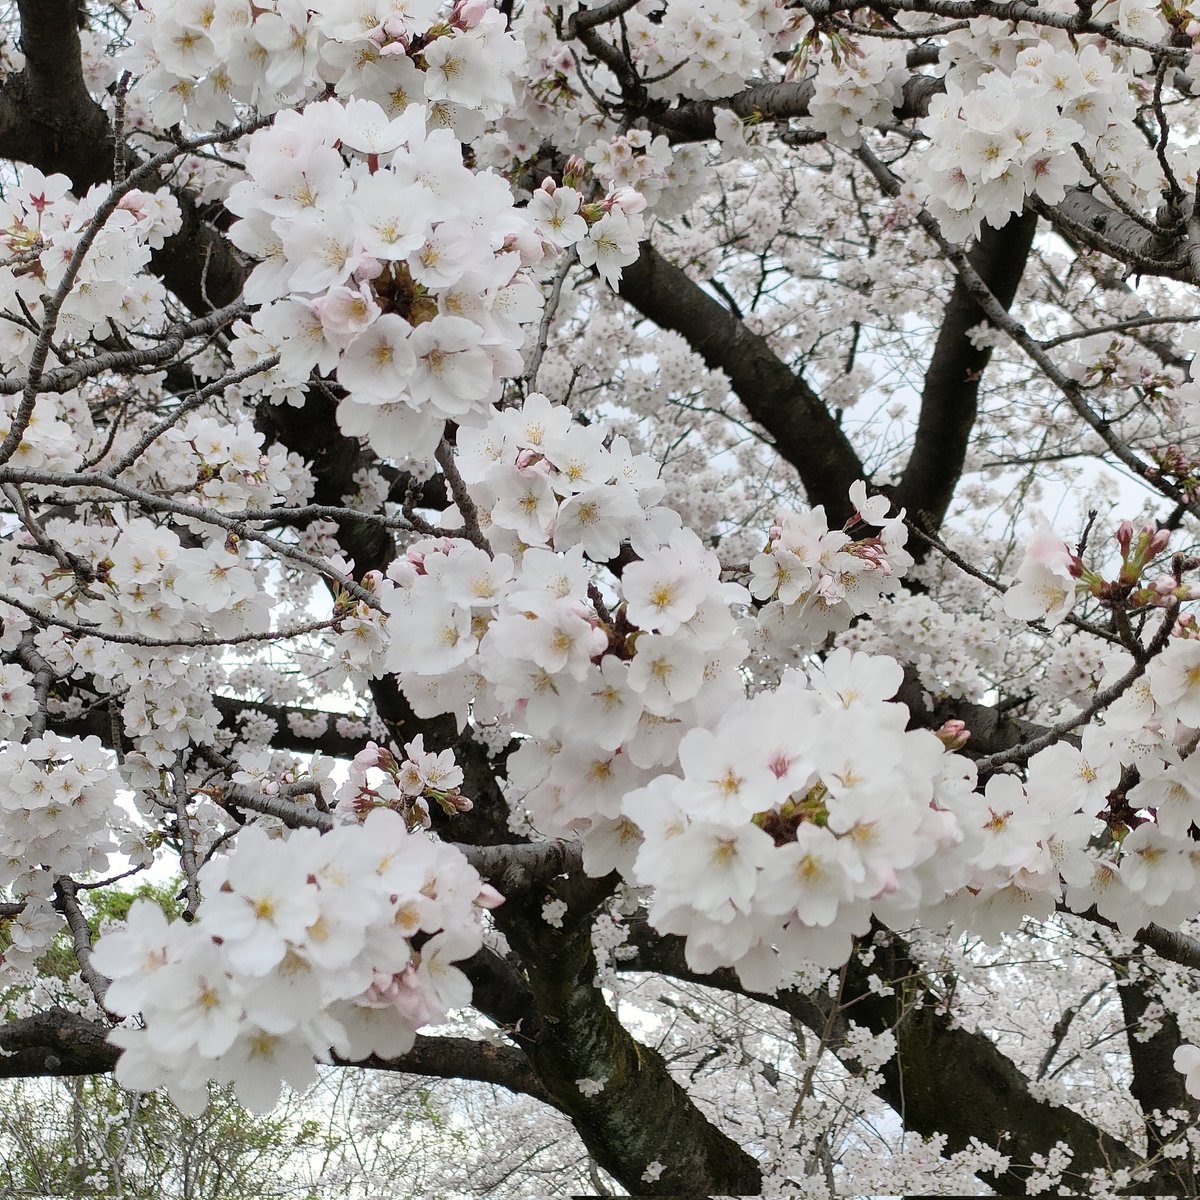 「こっちはまだ大丈夫と思ってた桜が思ってたより散り始めてたので慌てて花見してきた 」|雨月のイラスト